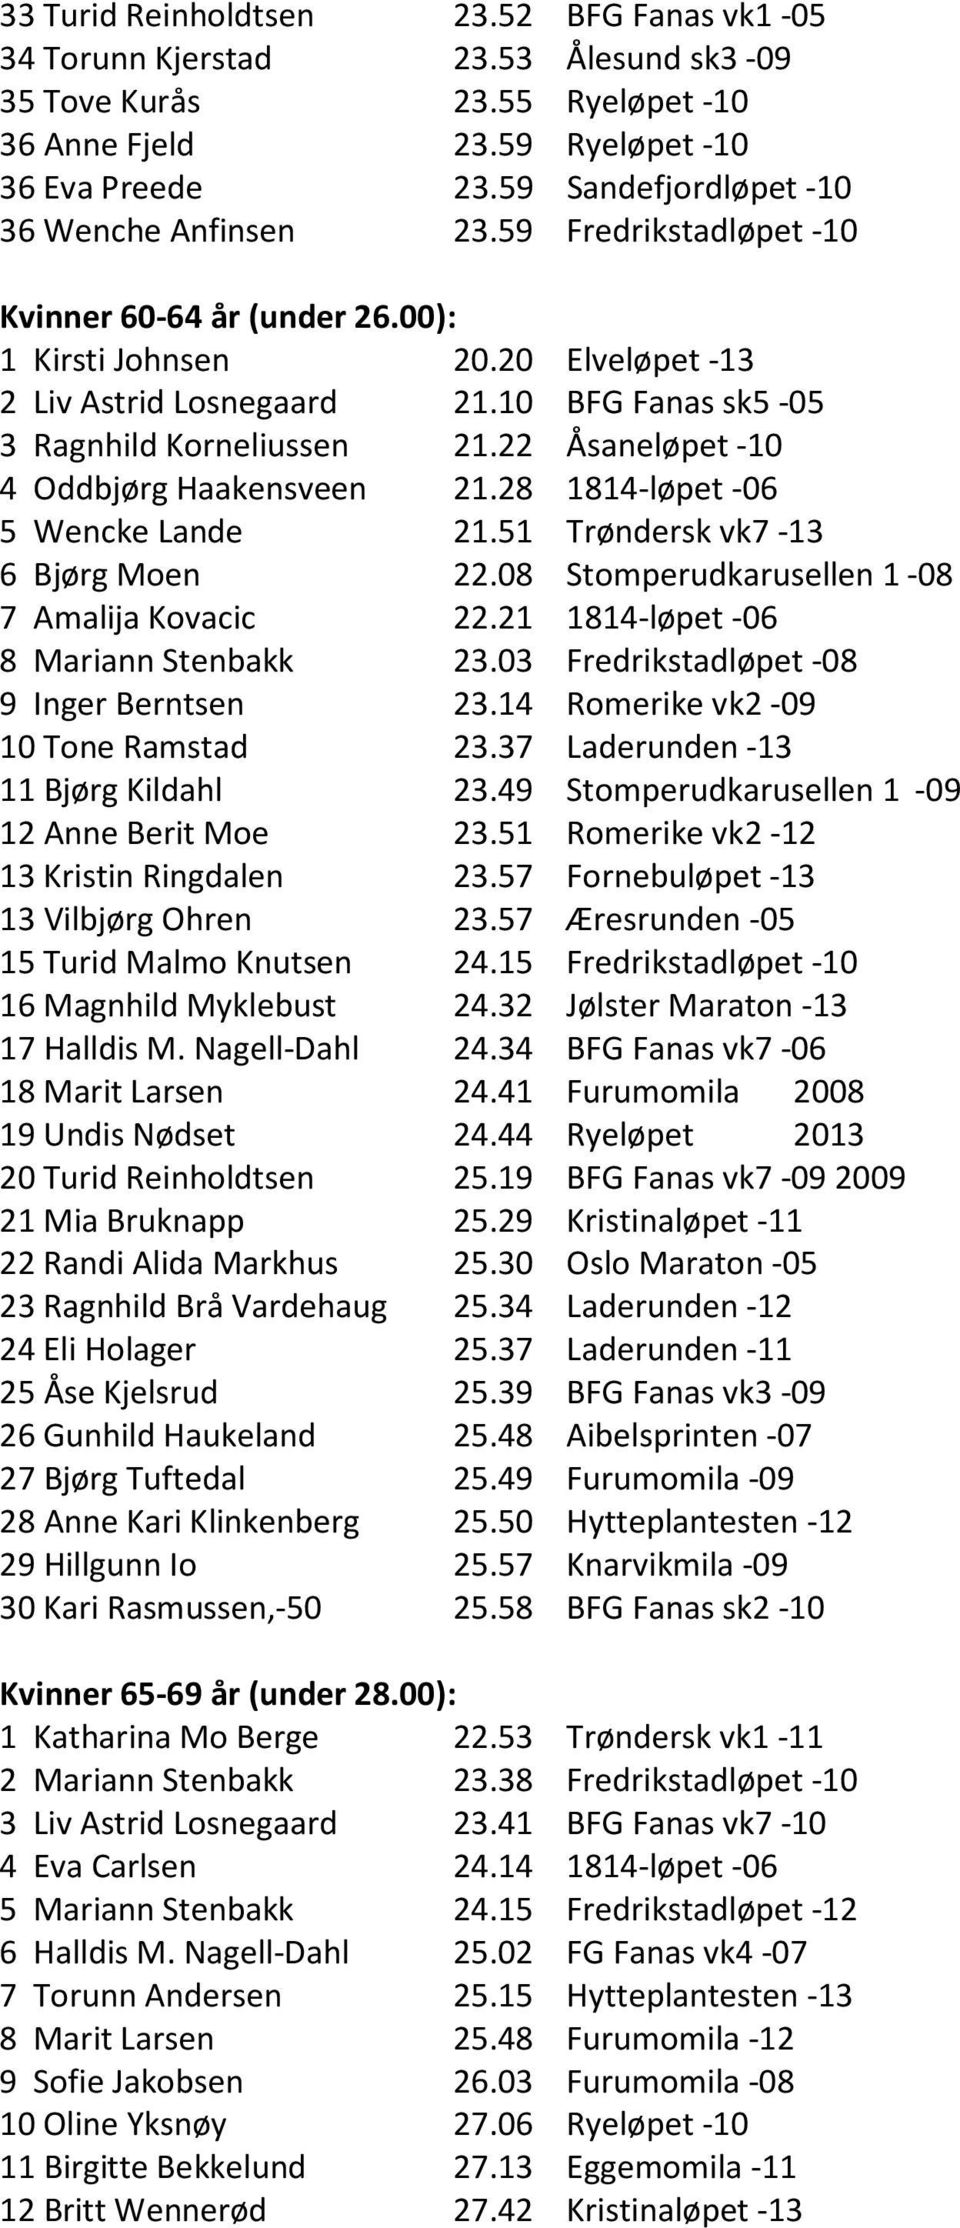 10 BFG Fanas sk5-05 3 Ragnhild Korneliussen 21.22 Åsaneløpet -10 4 Oddbjørg Haakensveen 21.28 1814-løpet -06 5 Wencke Lande 21.51 Trøndersk vk7-13 6 Bjørg Moen 22.